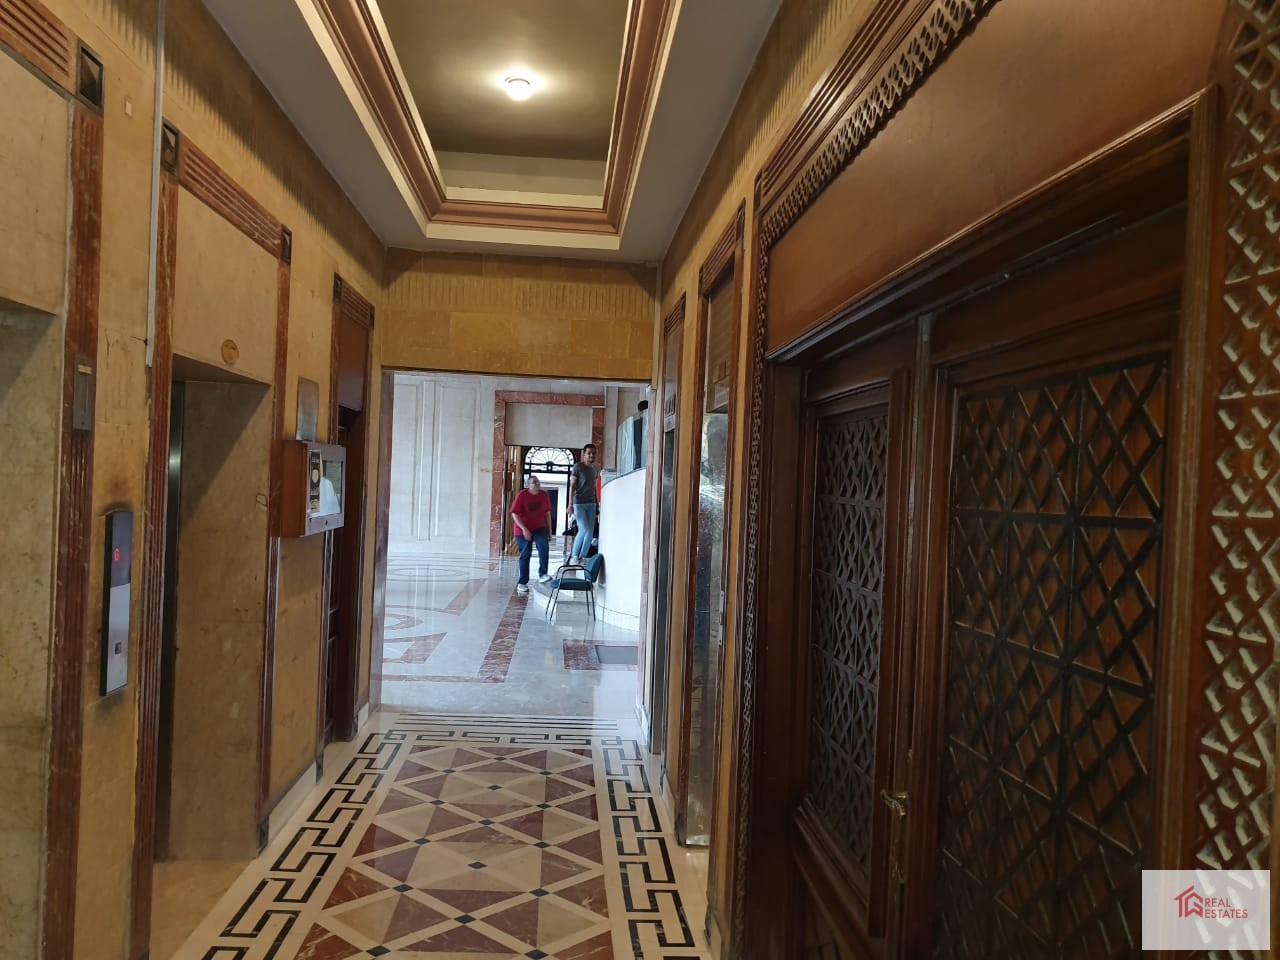 شقة للإيجار بالعجوزة، الجيزة، مصر المساحة: 472 م تتكون من 4 غرف 2 منهم بحمام الإيجار